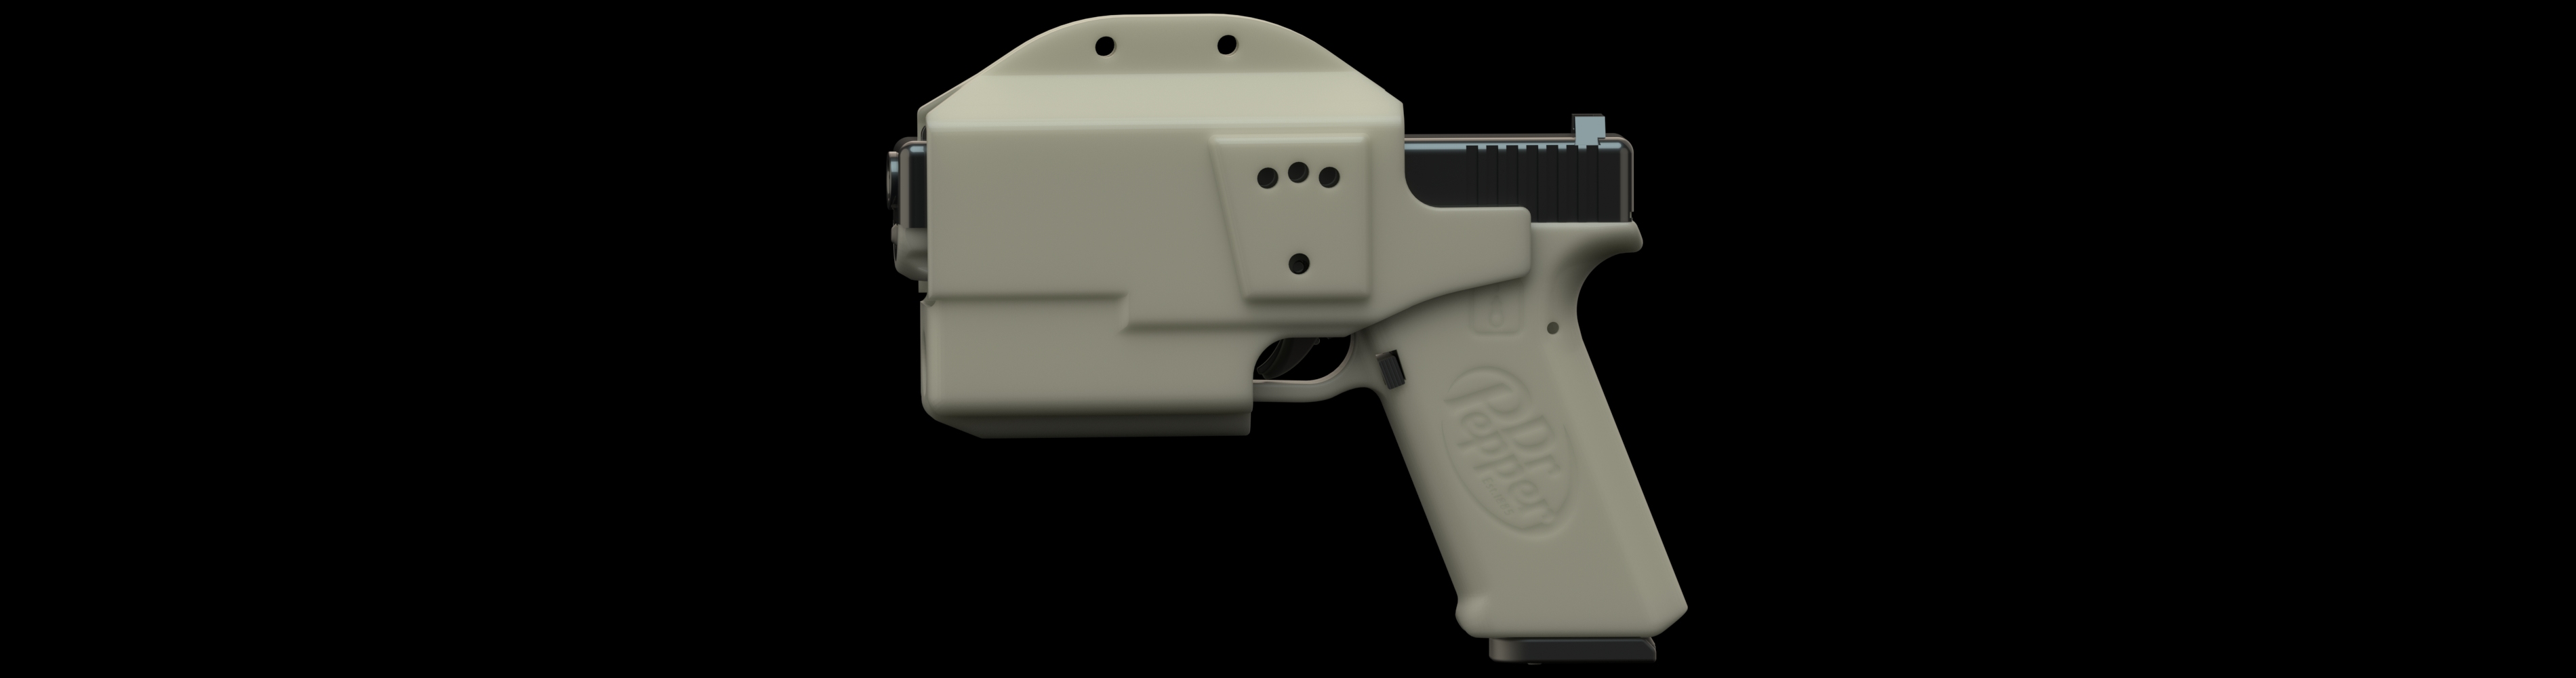 P80/Glock Pistol Holster | DEFCAD